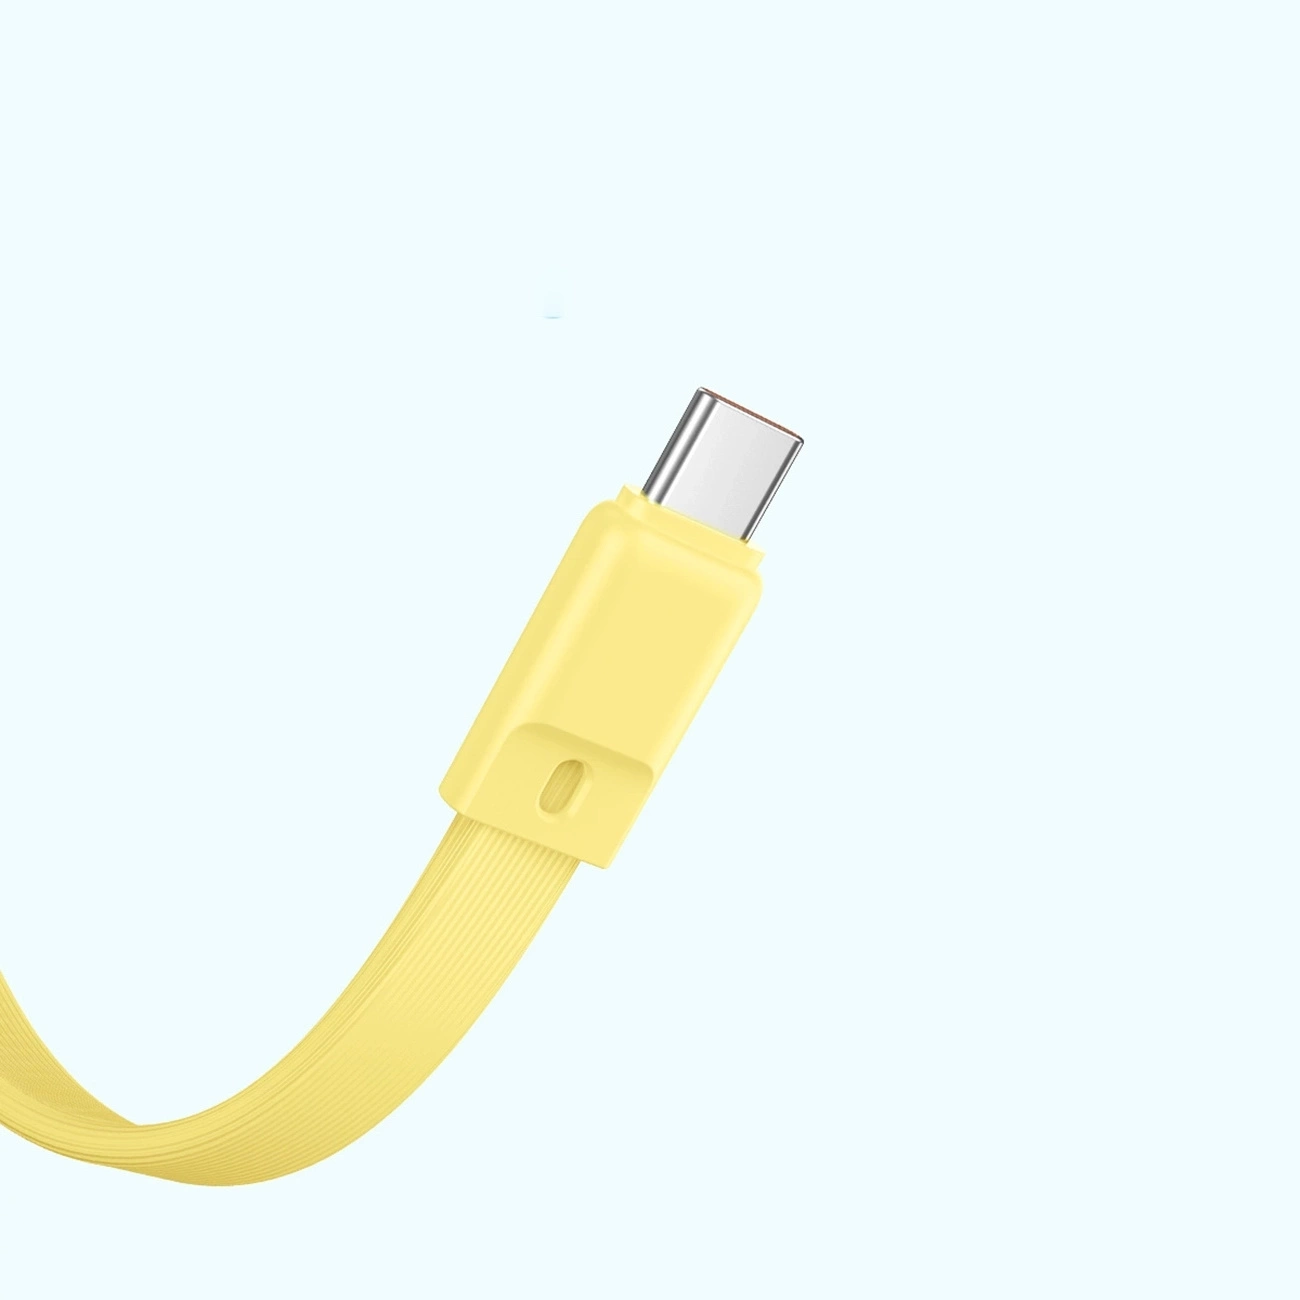 Kabel mit USB-C-Anschluss auf blauem Hintergrund